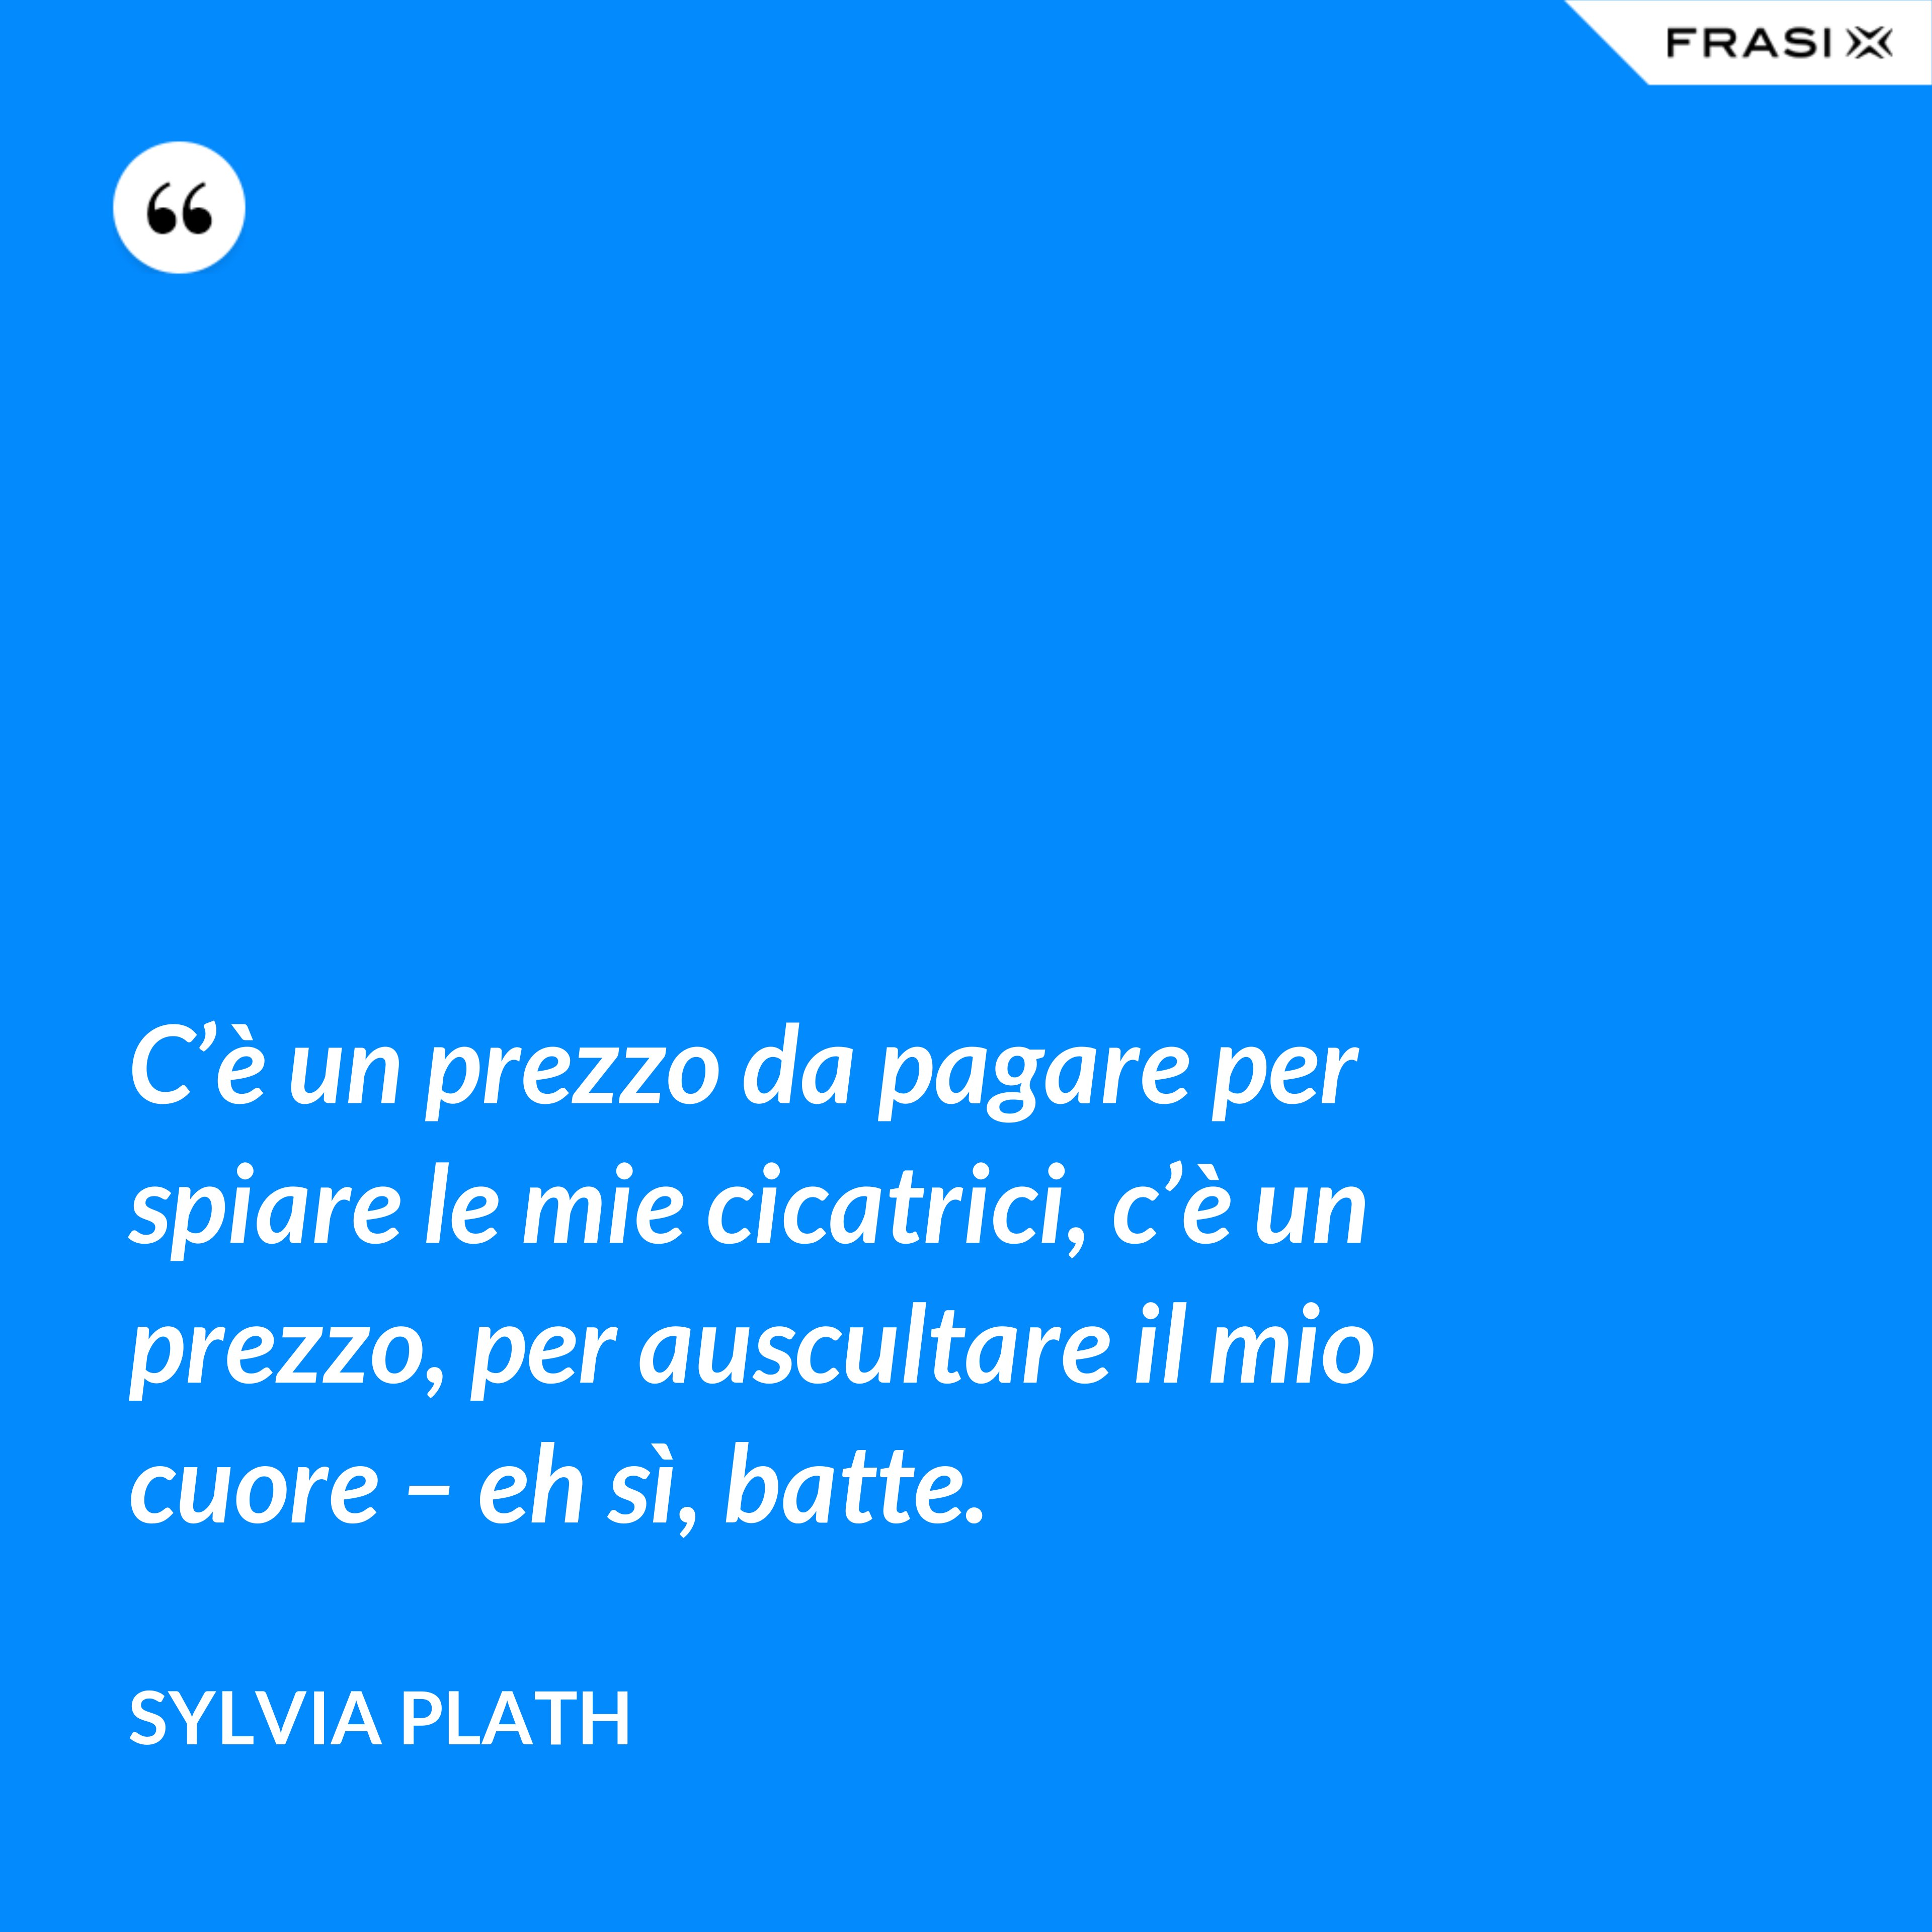 C’è un prezzo da pagare per spiare le mie cicatrici, c’è un prezzo, per auscultare il mio cuore – eh sì, batte. - Sylvia Plath